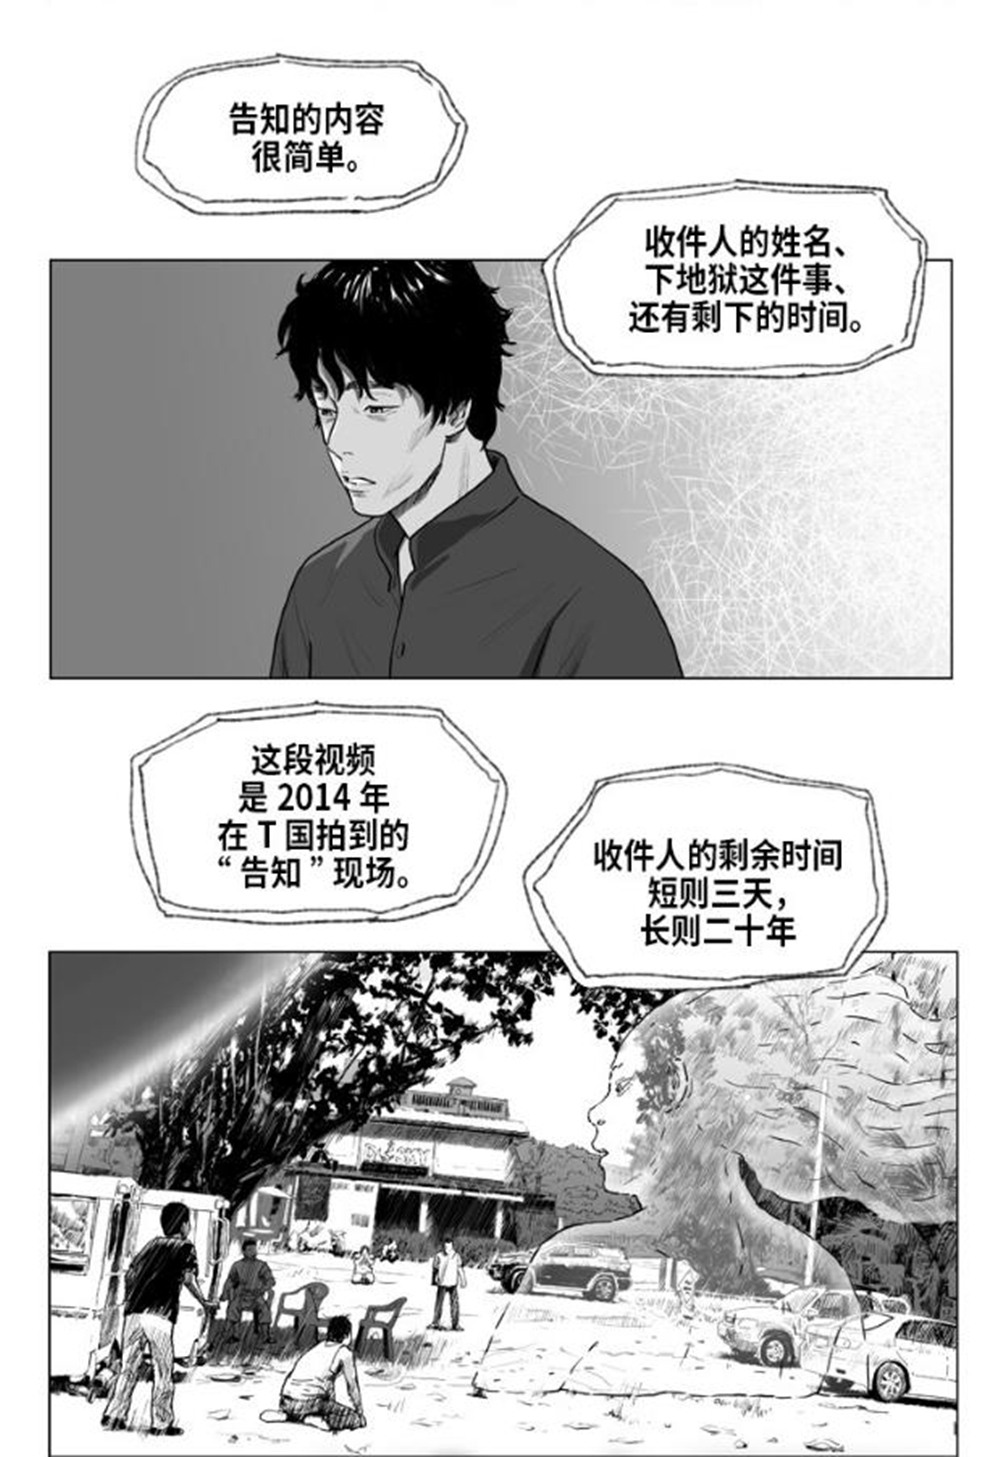 《地狱公使》中文版漫画已在“咚漫”上线。